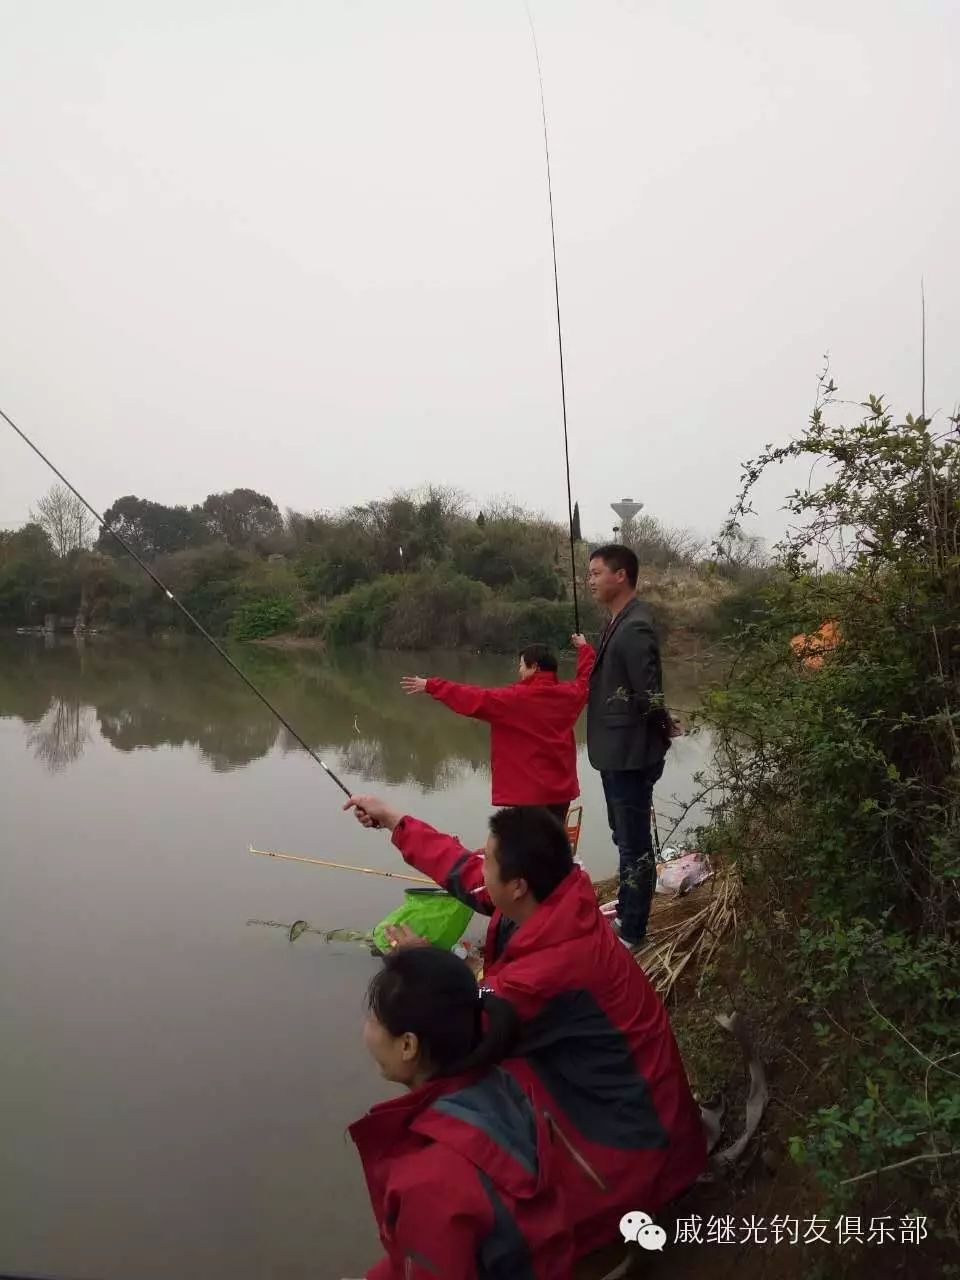 野外钓鱼需谨慎